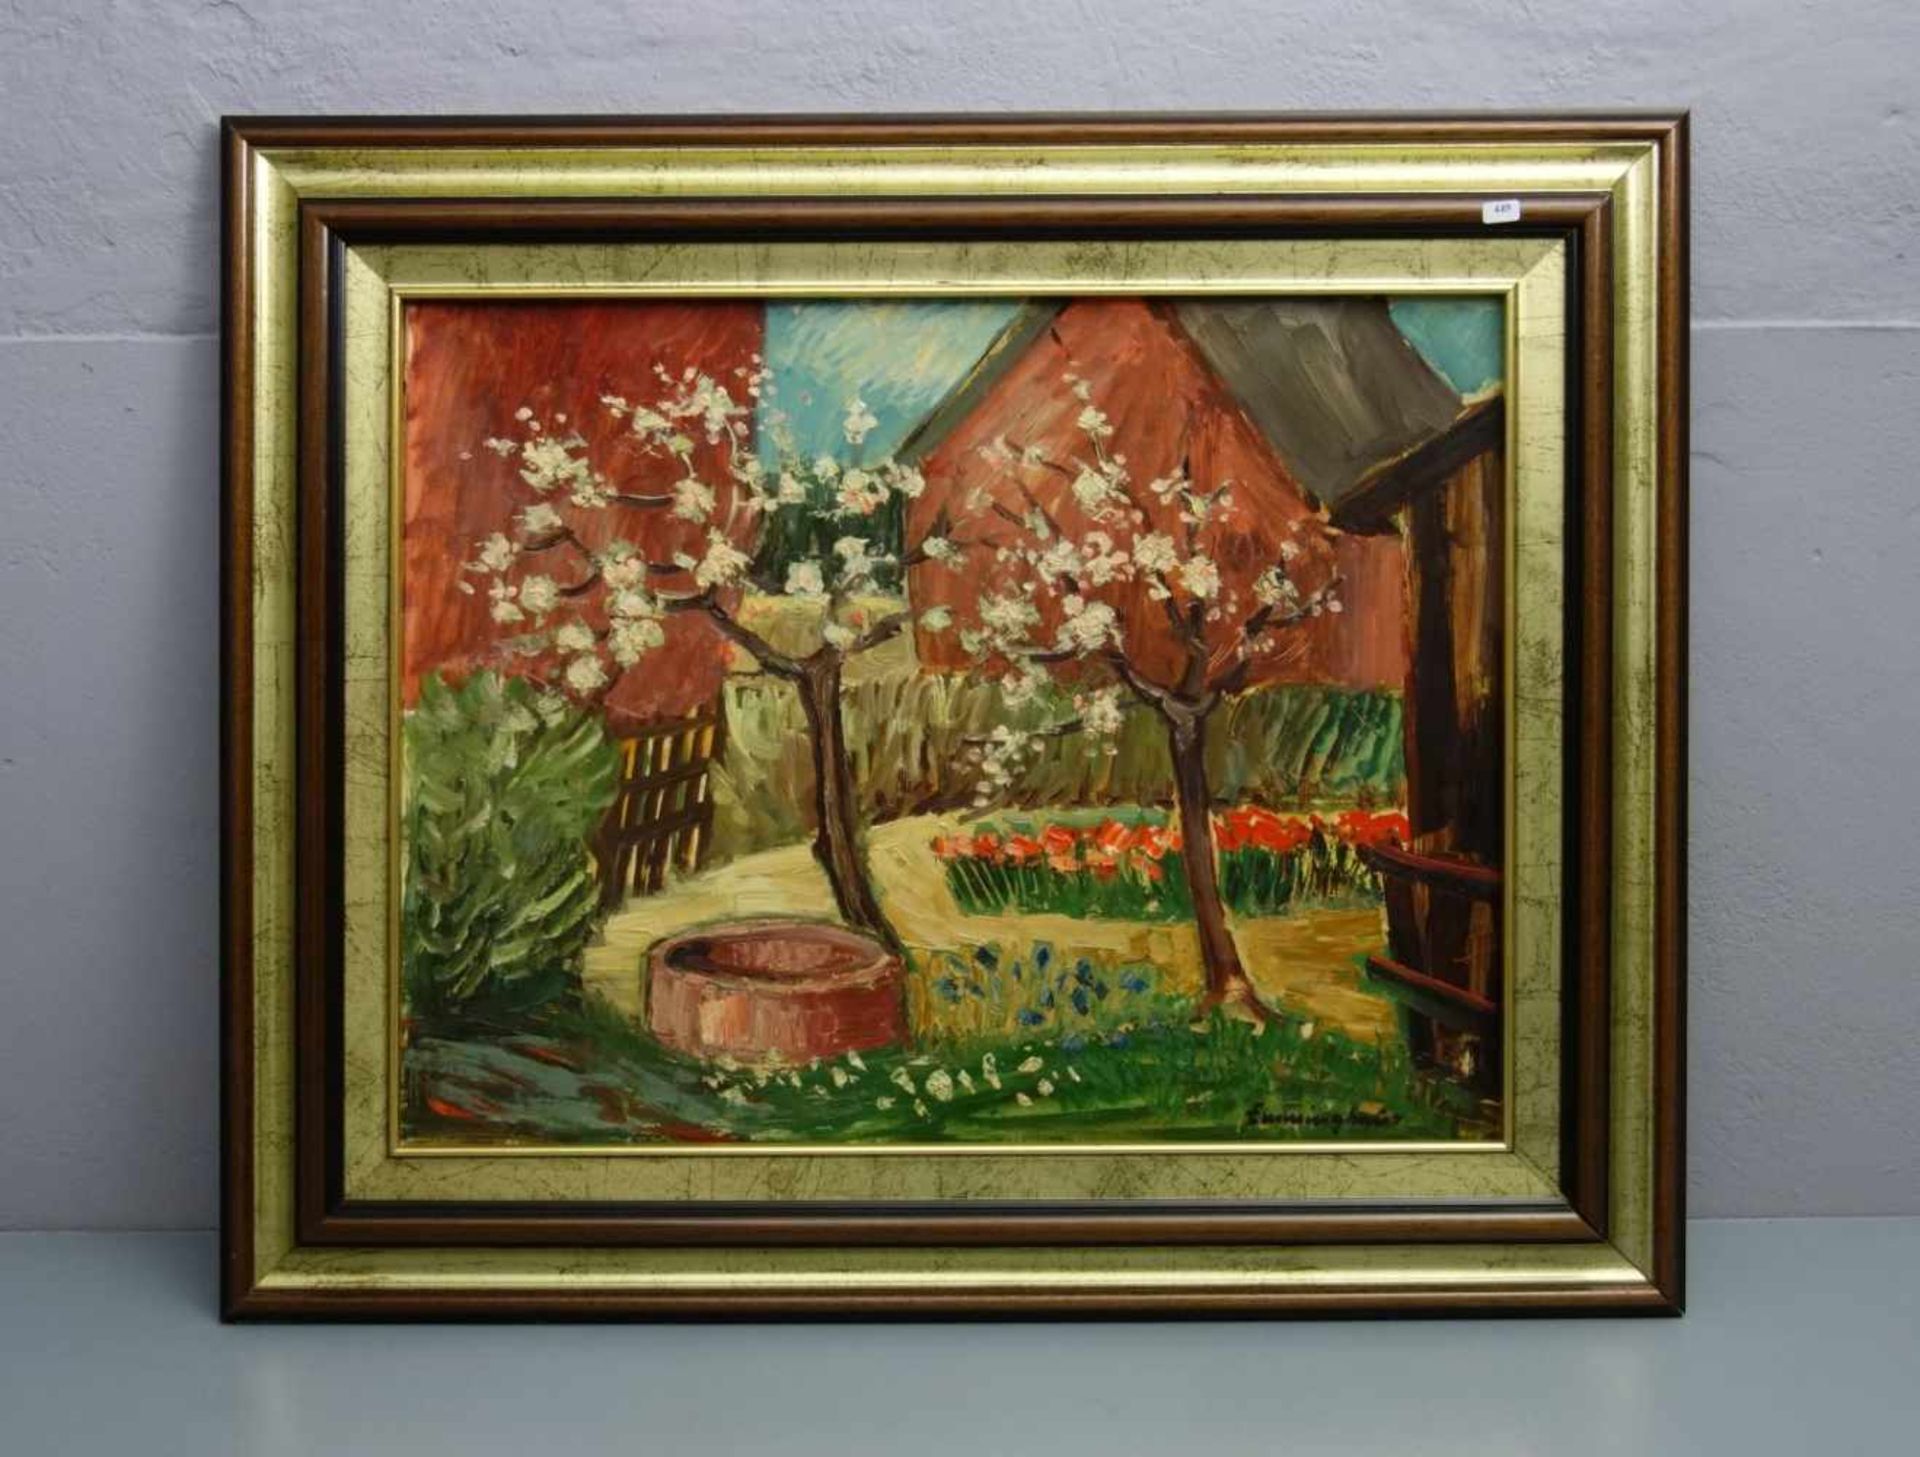 EMMINGHAUS (Osnabrücker Maler des 19./20. Jh.), Gemälde / painting: "Garten mit Brunnen und